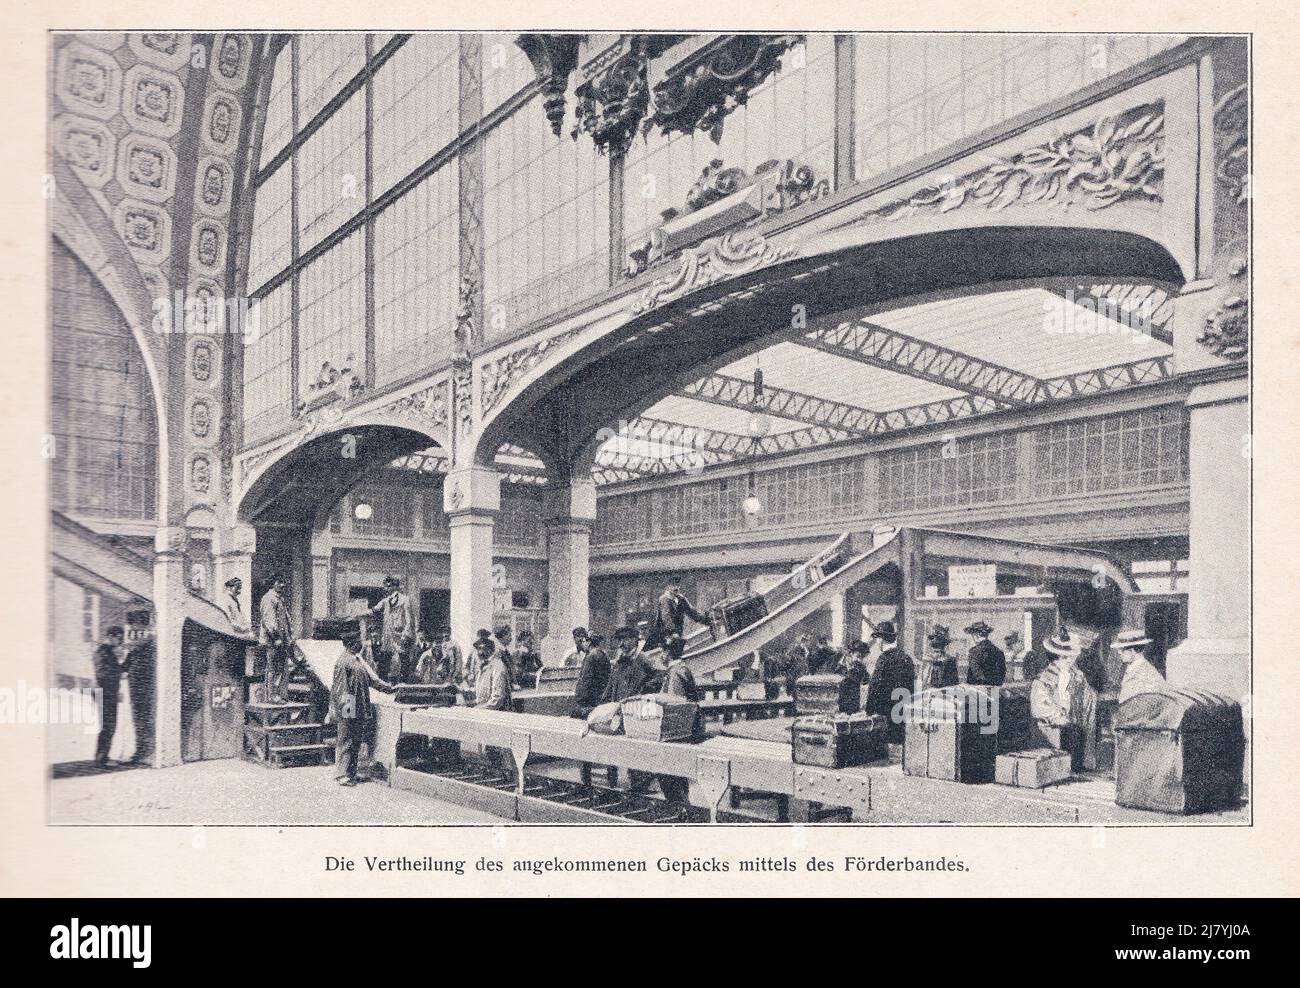 La distribution des bagages à l'arrivée au moyen du tapis roulant de la station de métro Palais Royal paris 1900th Banque D'Images